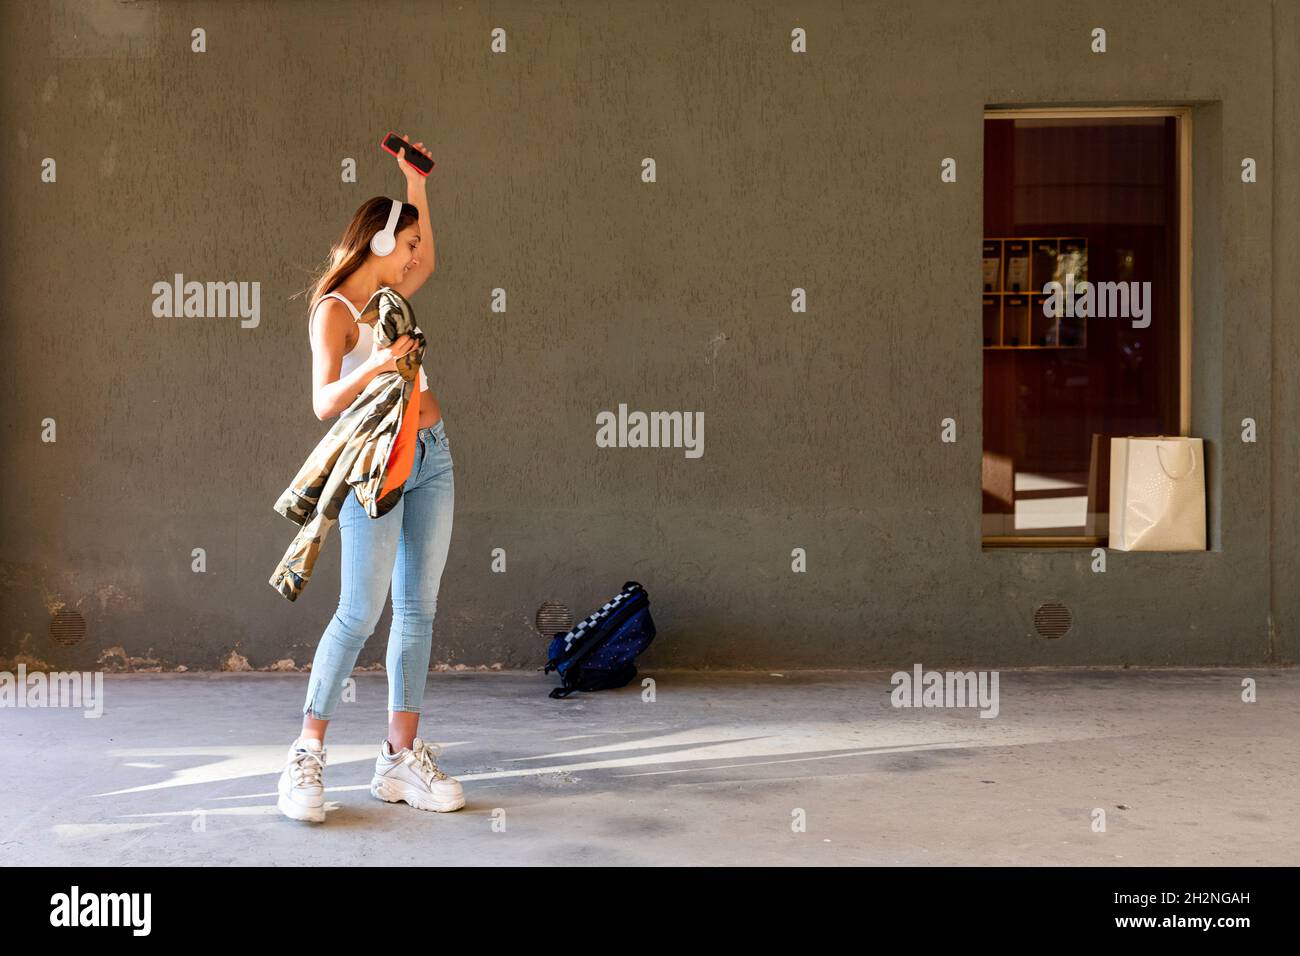 Adolescente mujer con auriculares inalámbricos bailando en el sendero Foto de stock